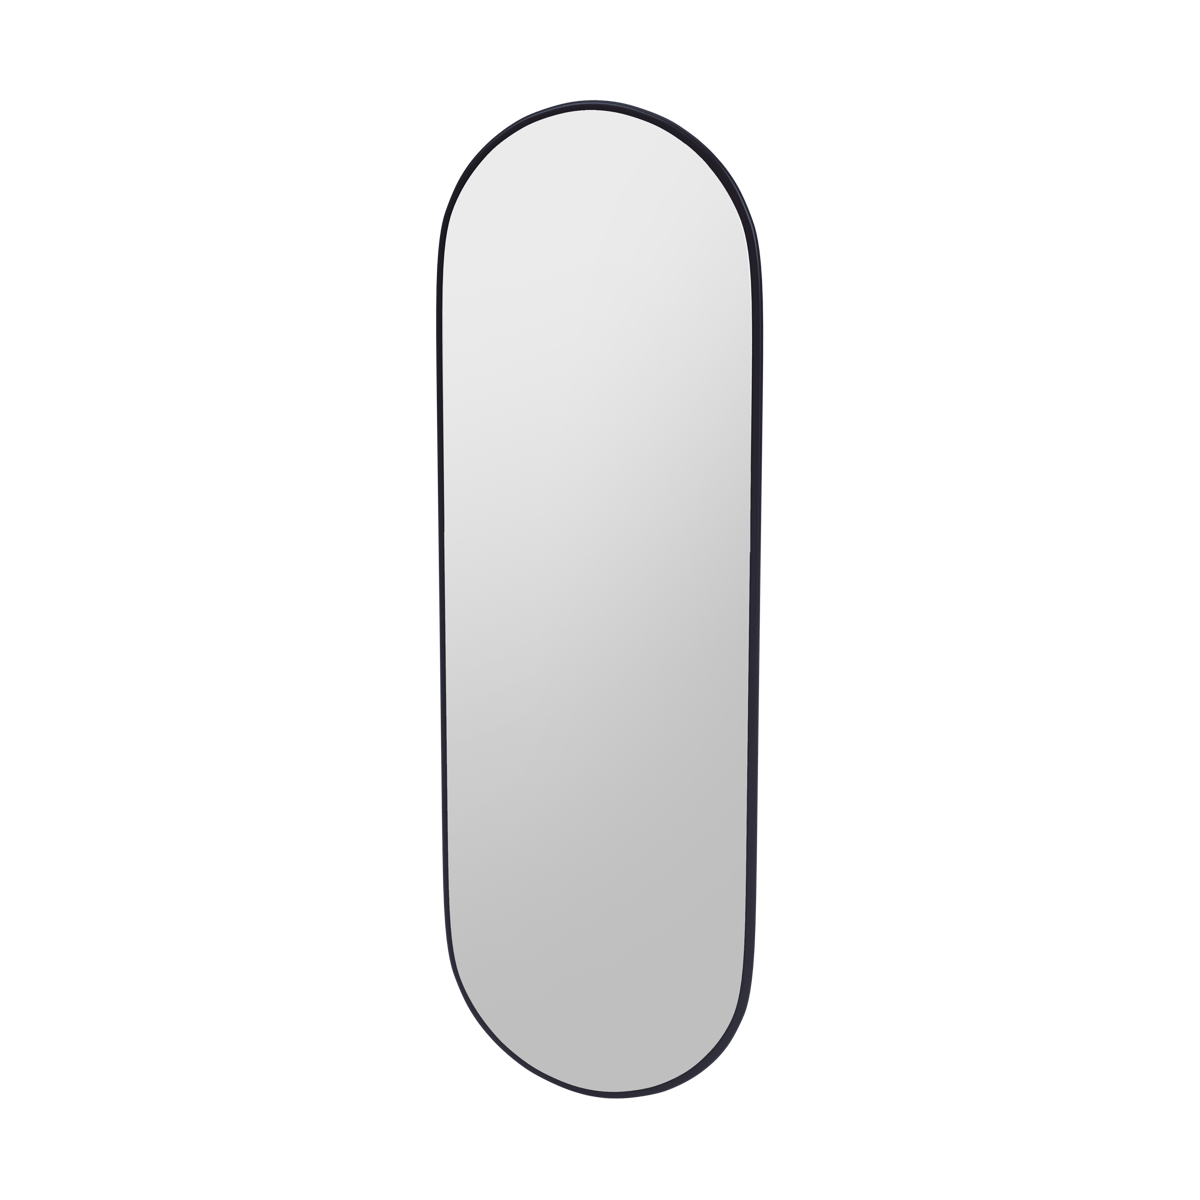 Montana FIGUUR Mirror Spiegel - SP824R Shadow